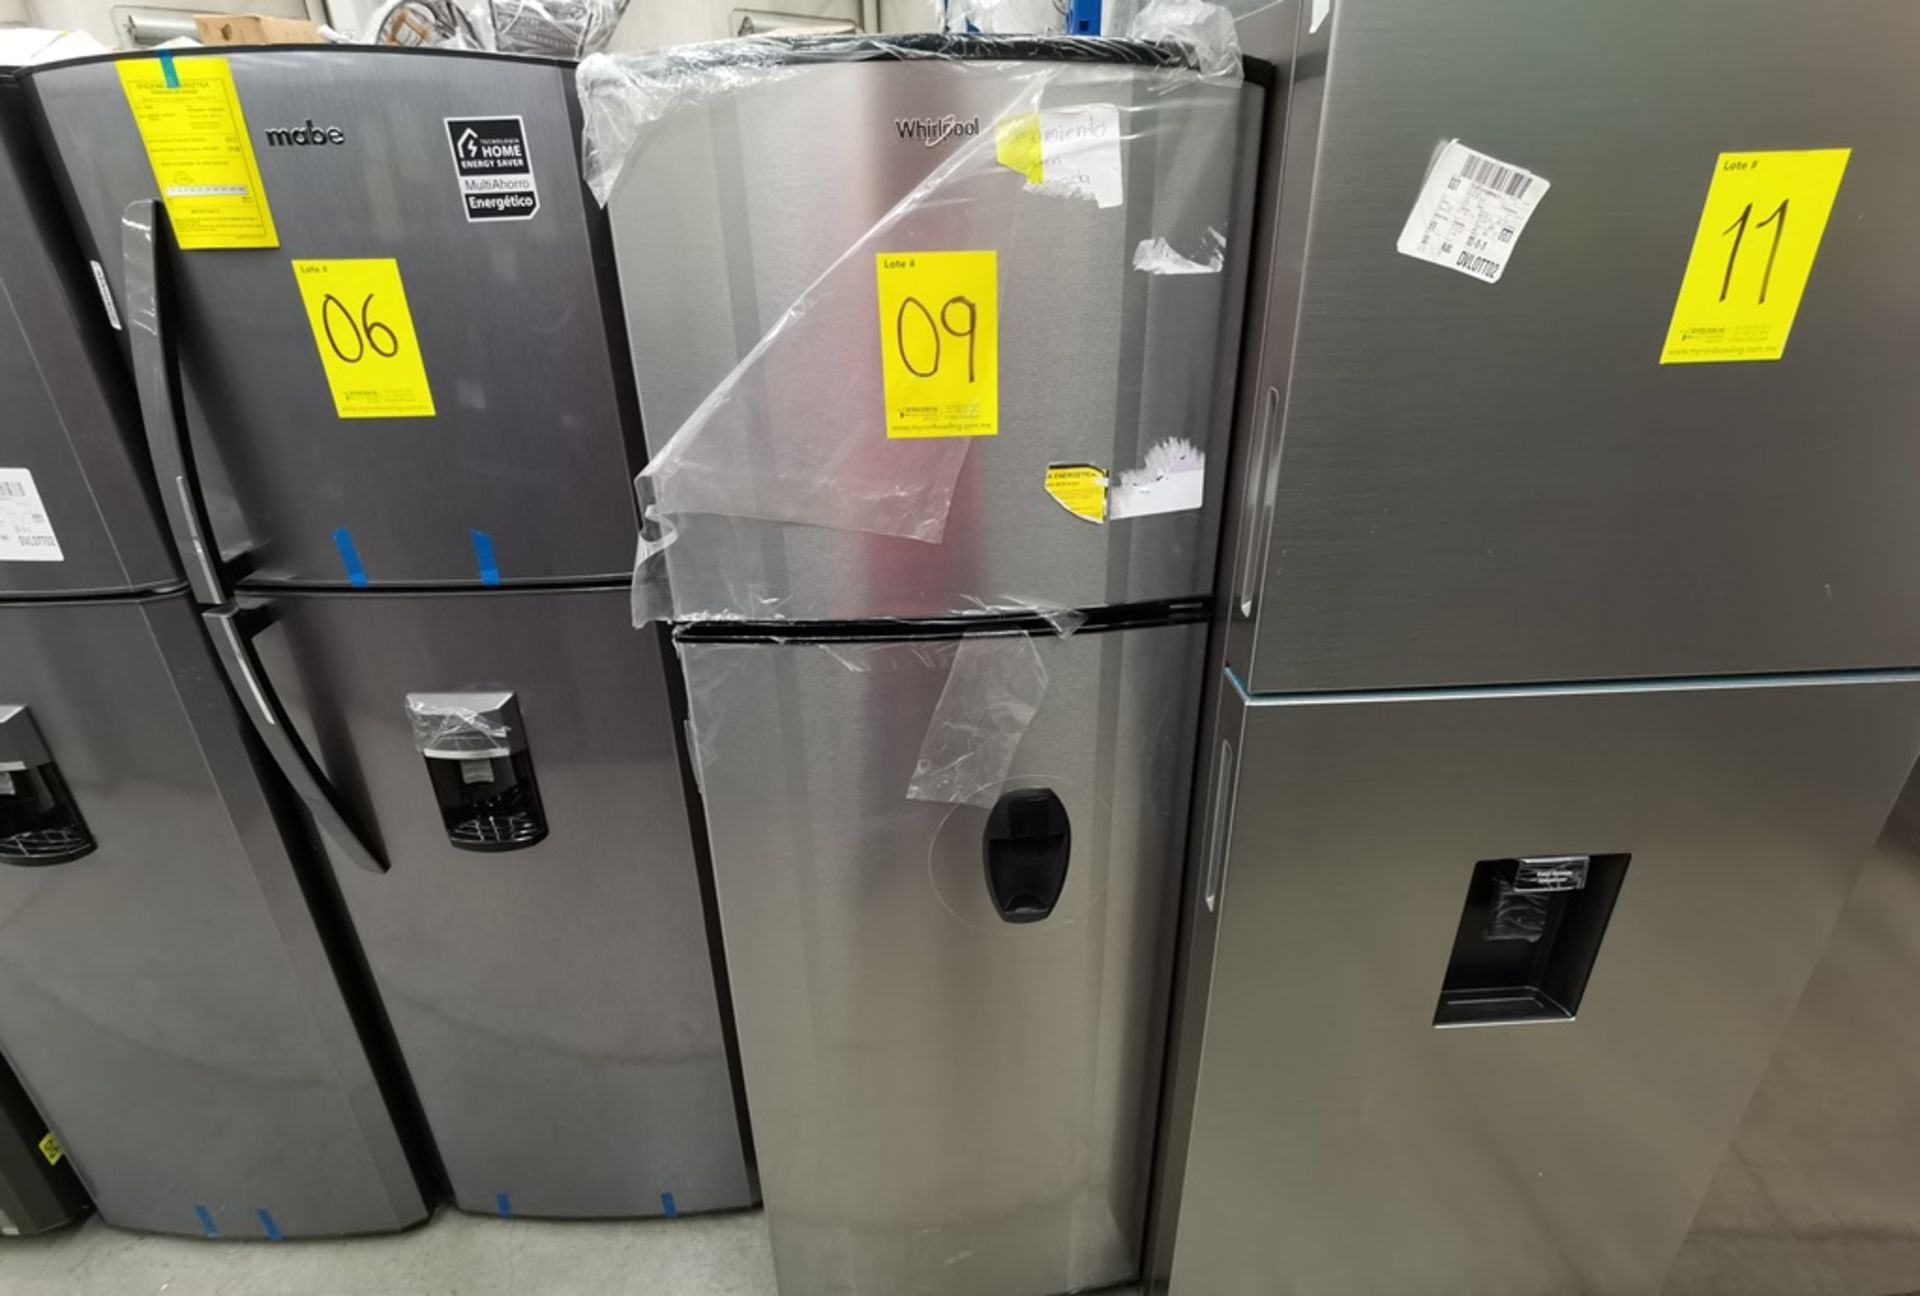 Lote De 2 Refrigeradores Contiene: 1 Refrigerador Marca Across, Modelo AT9007G03, Serie VRB1230980, - Image 8 of 16